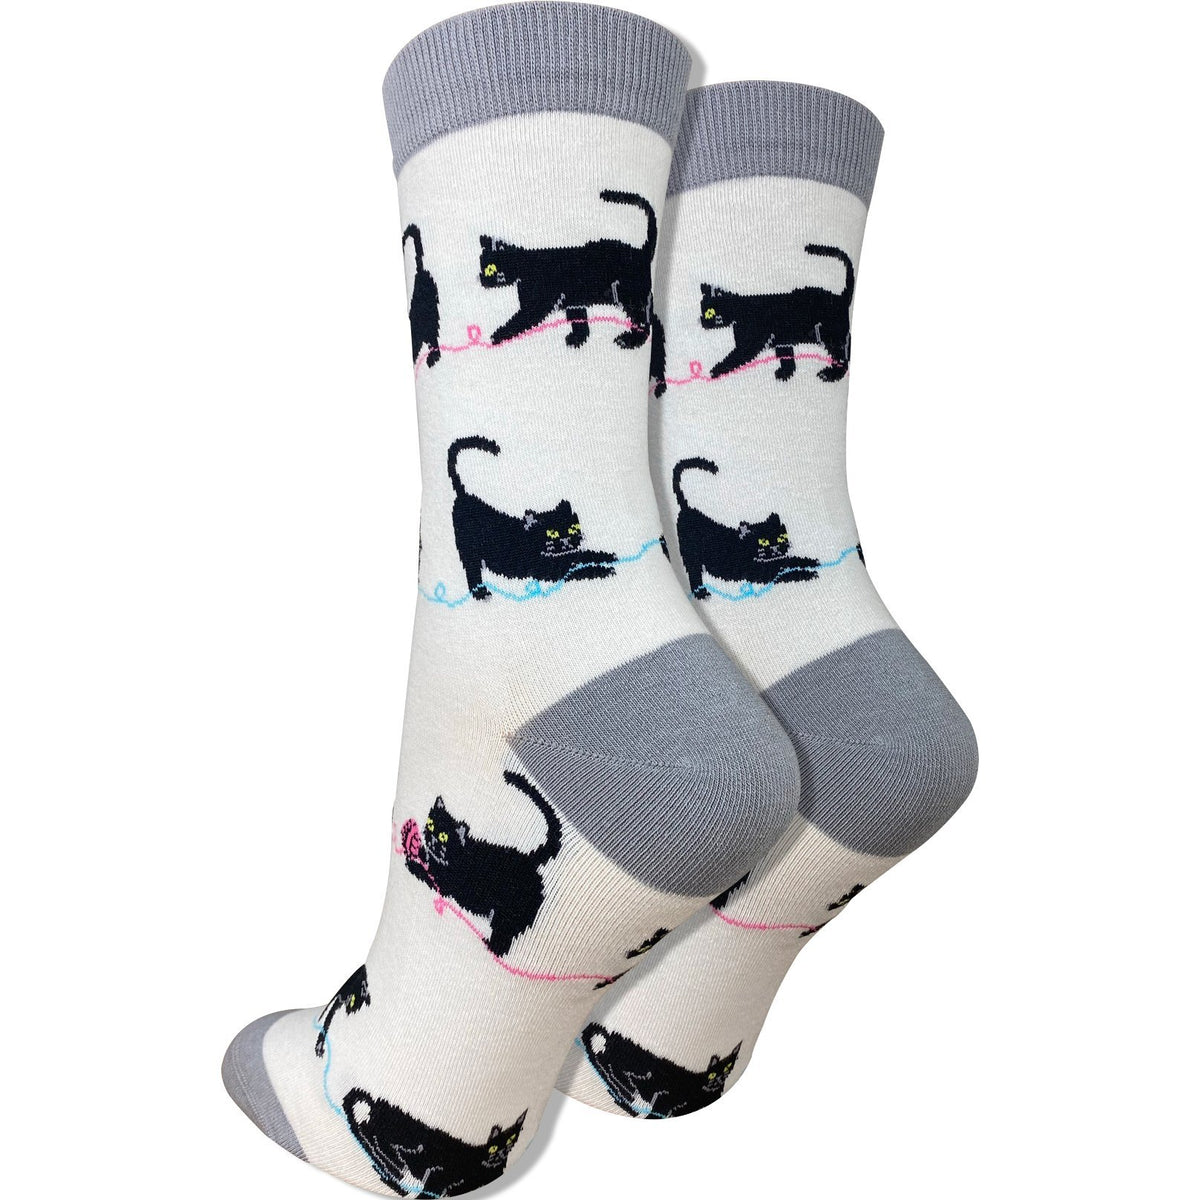 Women's Polar Bear Socks - Imagery Socks